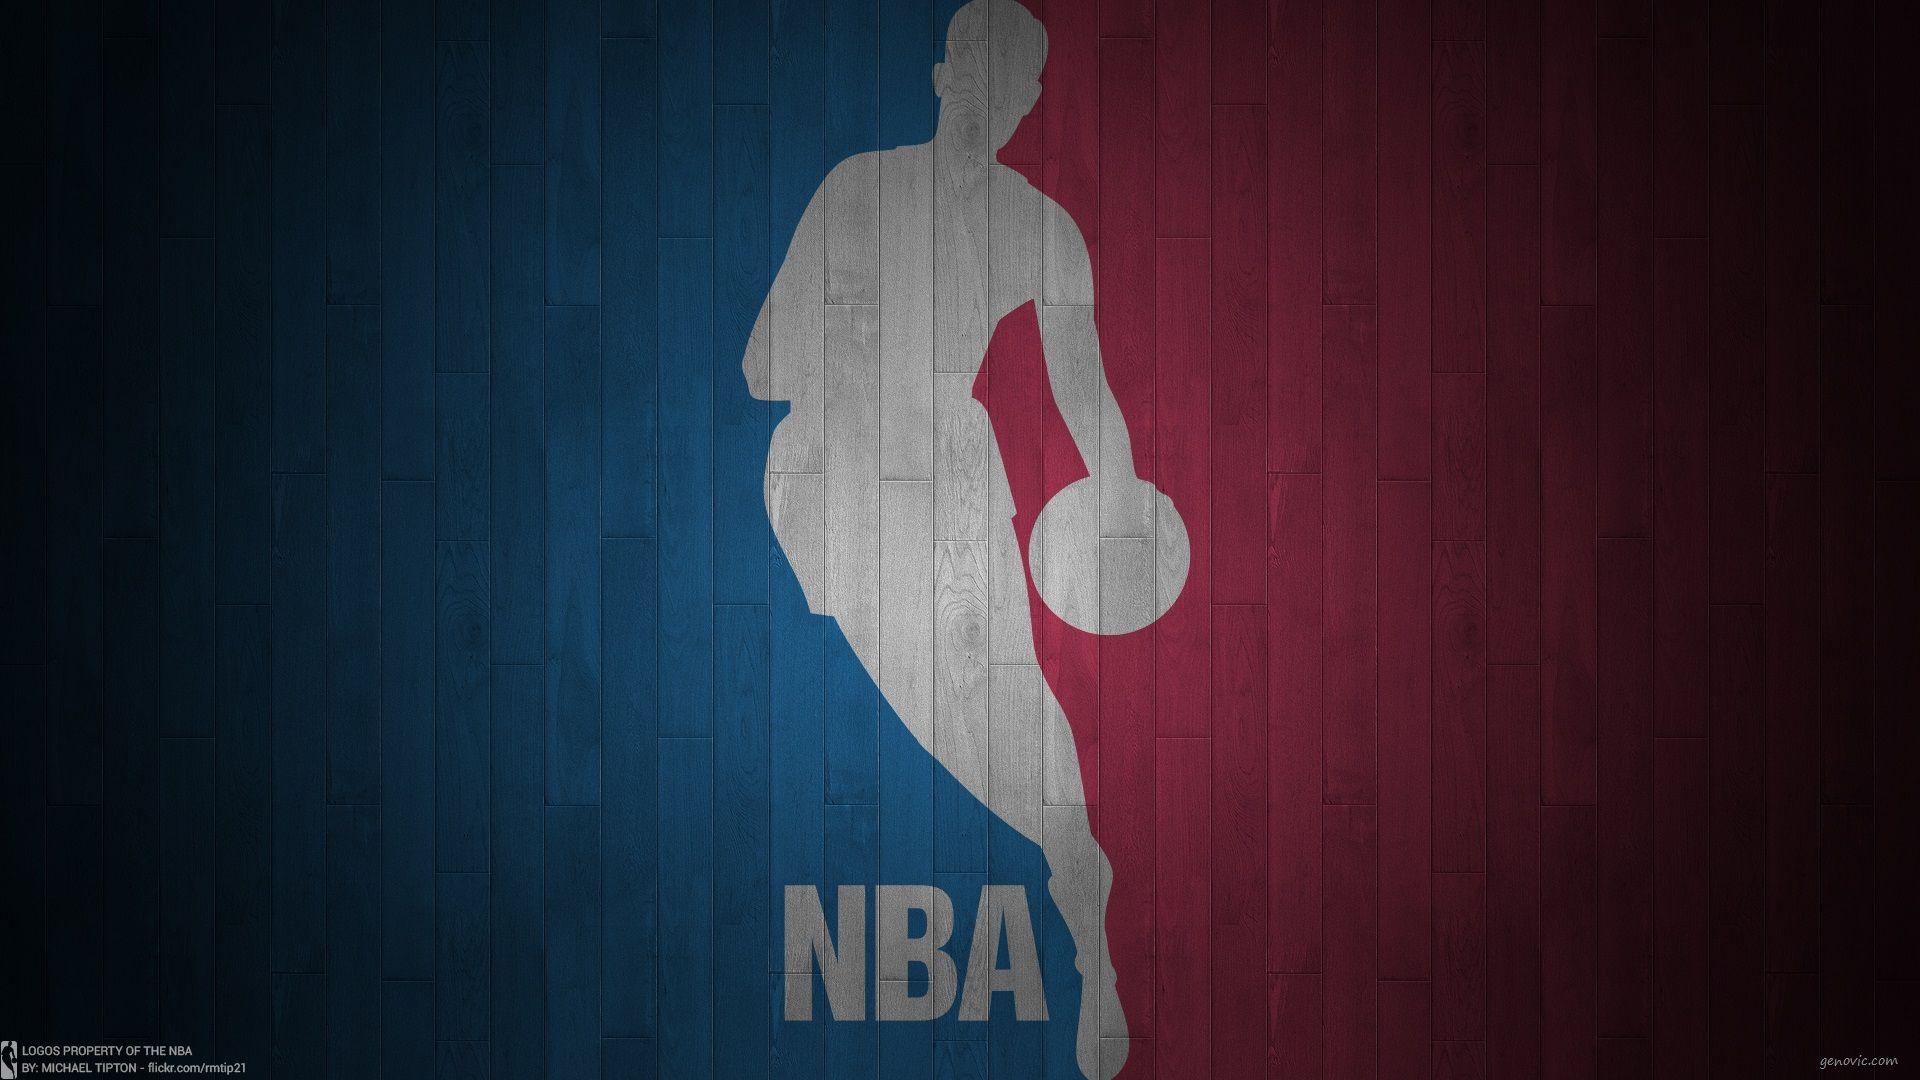 Across The NBA basketball fan welcome!